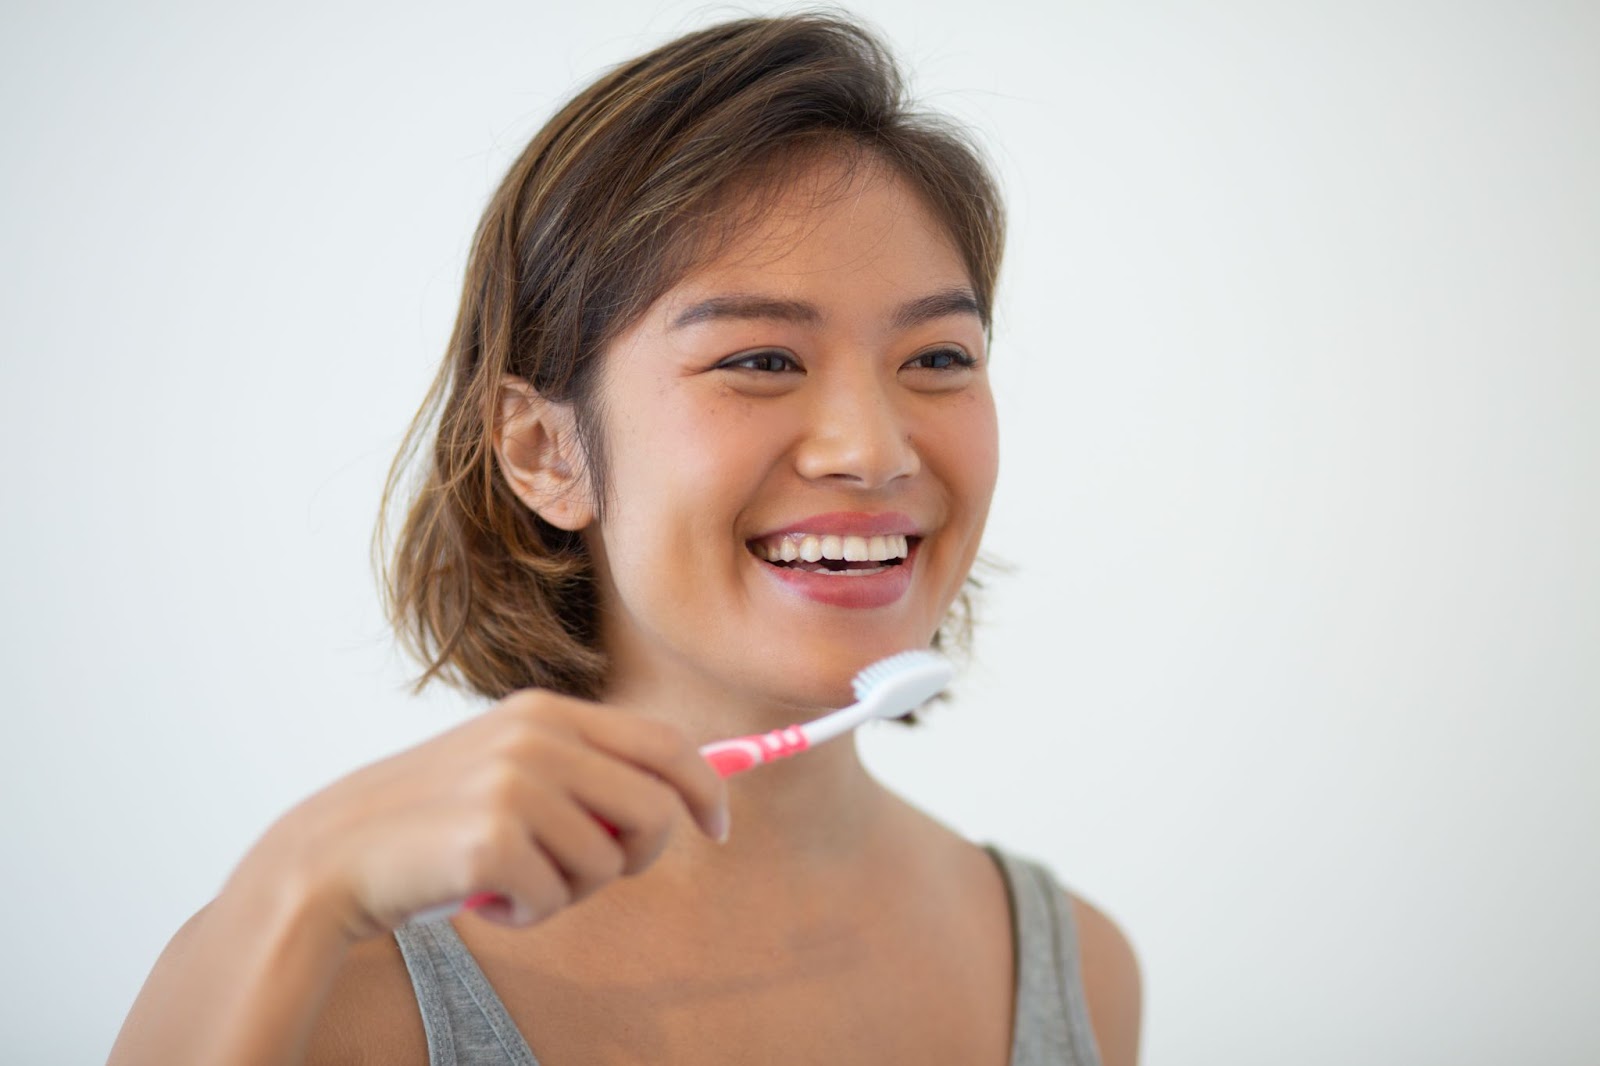 不良口腔清潔習慣容易引致牙齦發炎